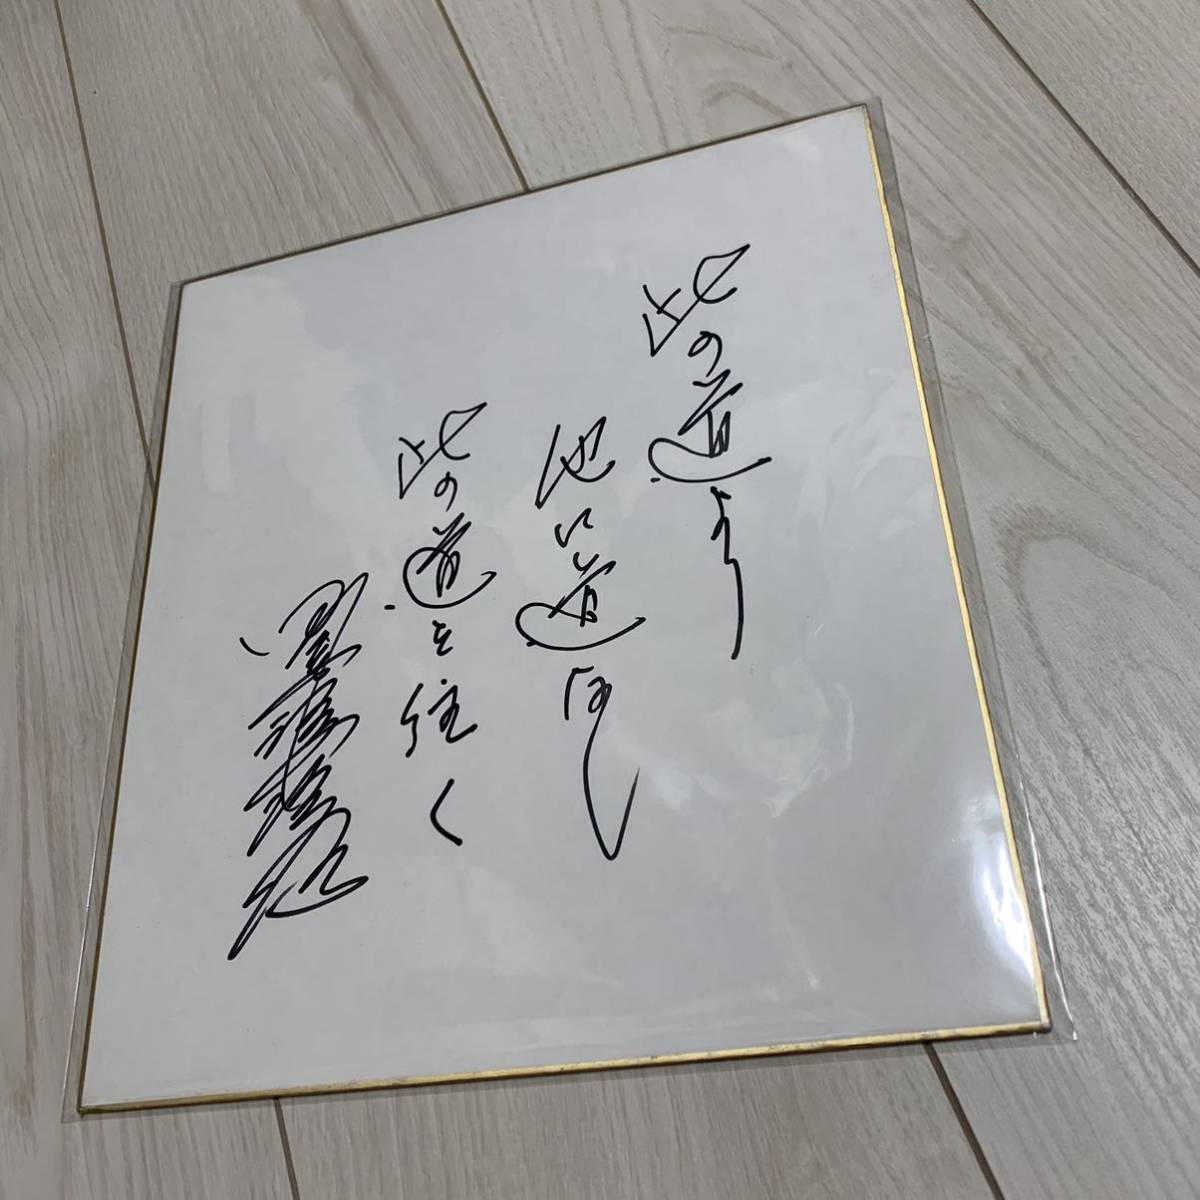 田宫健二郎亲笔签名彩纸阪神虎, 棒球, 纪念品, 相关商品, 符号